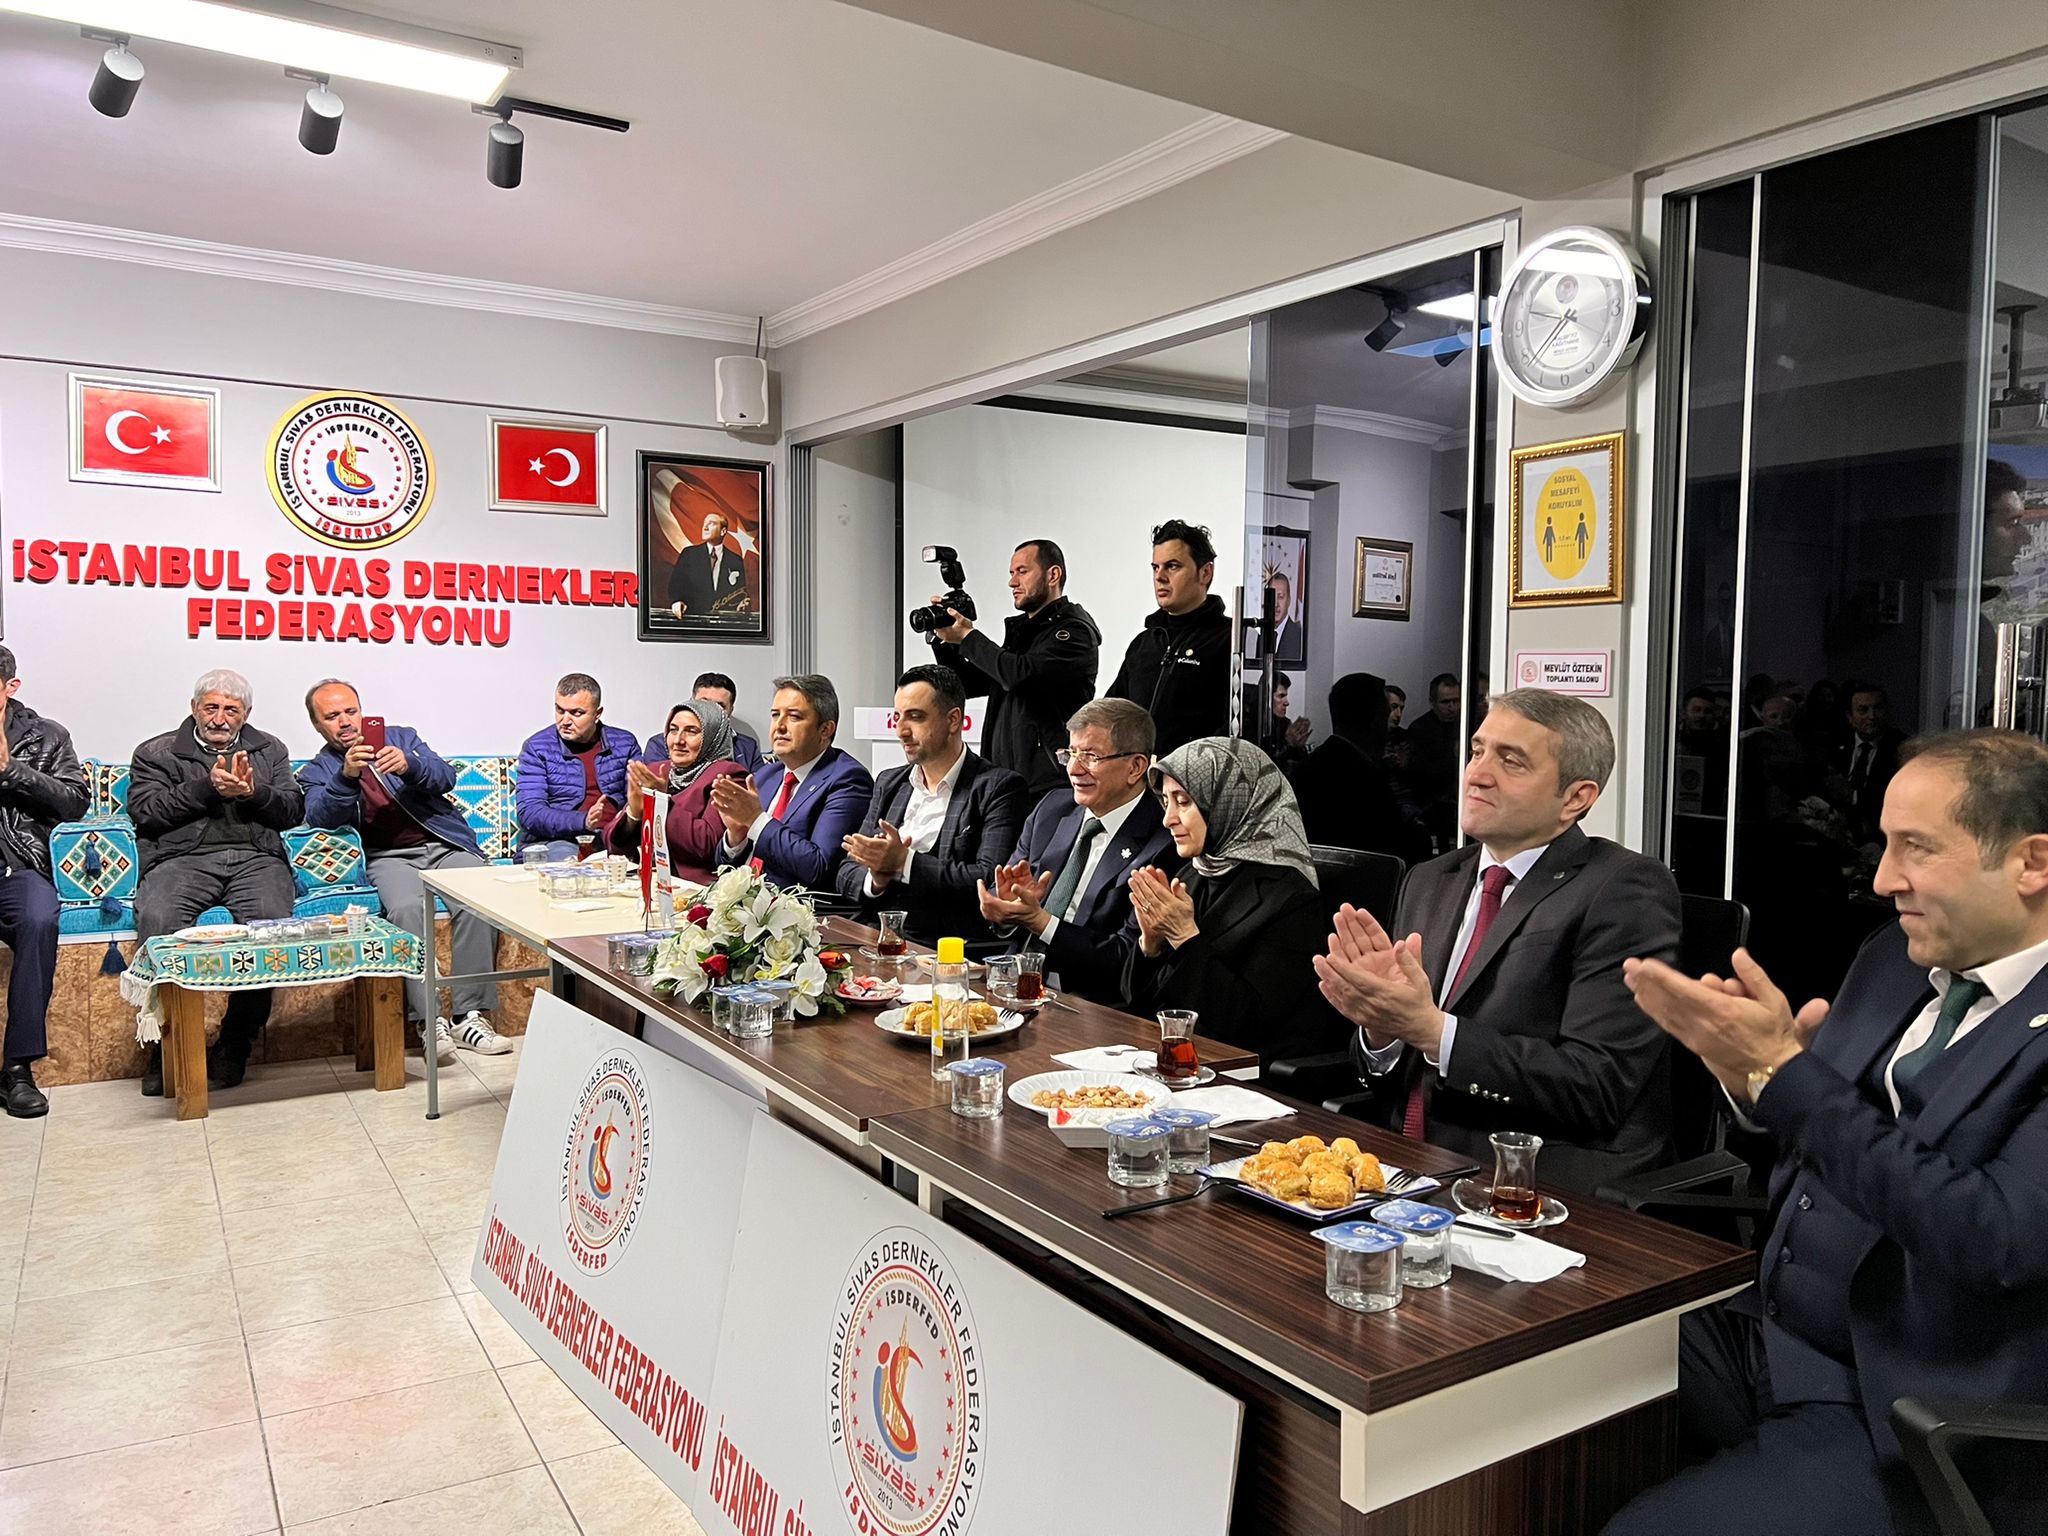 İstanbul Sivas Dernekler Federasyonu Ziyareti